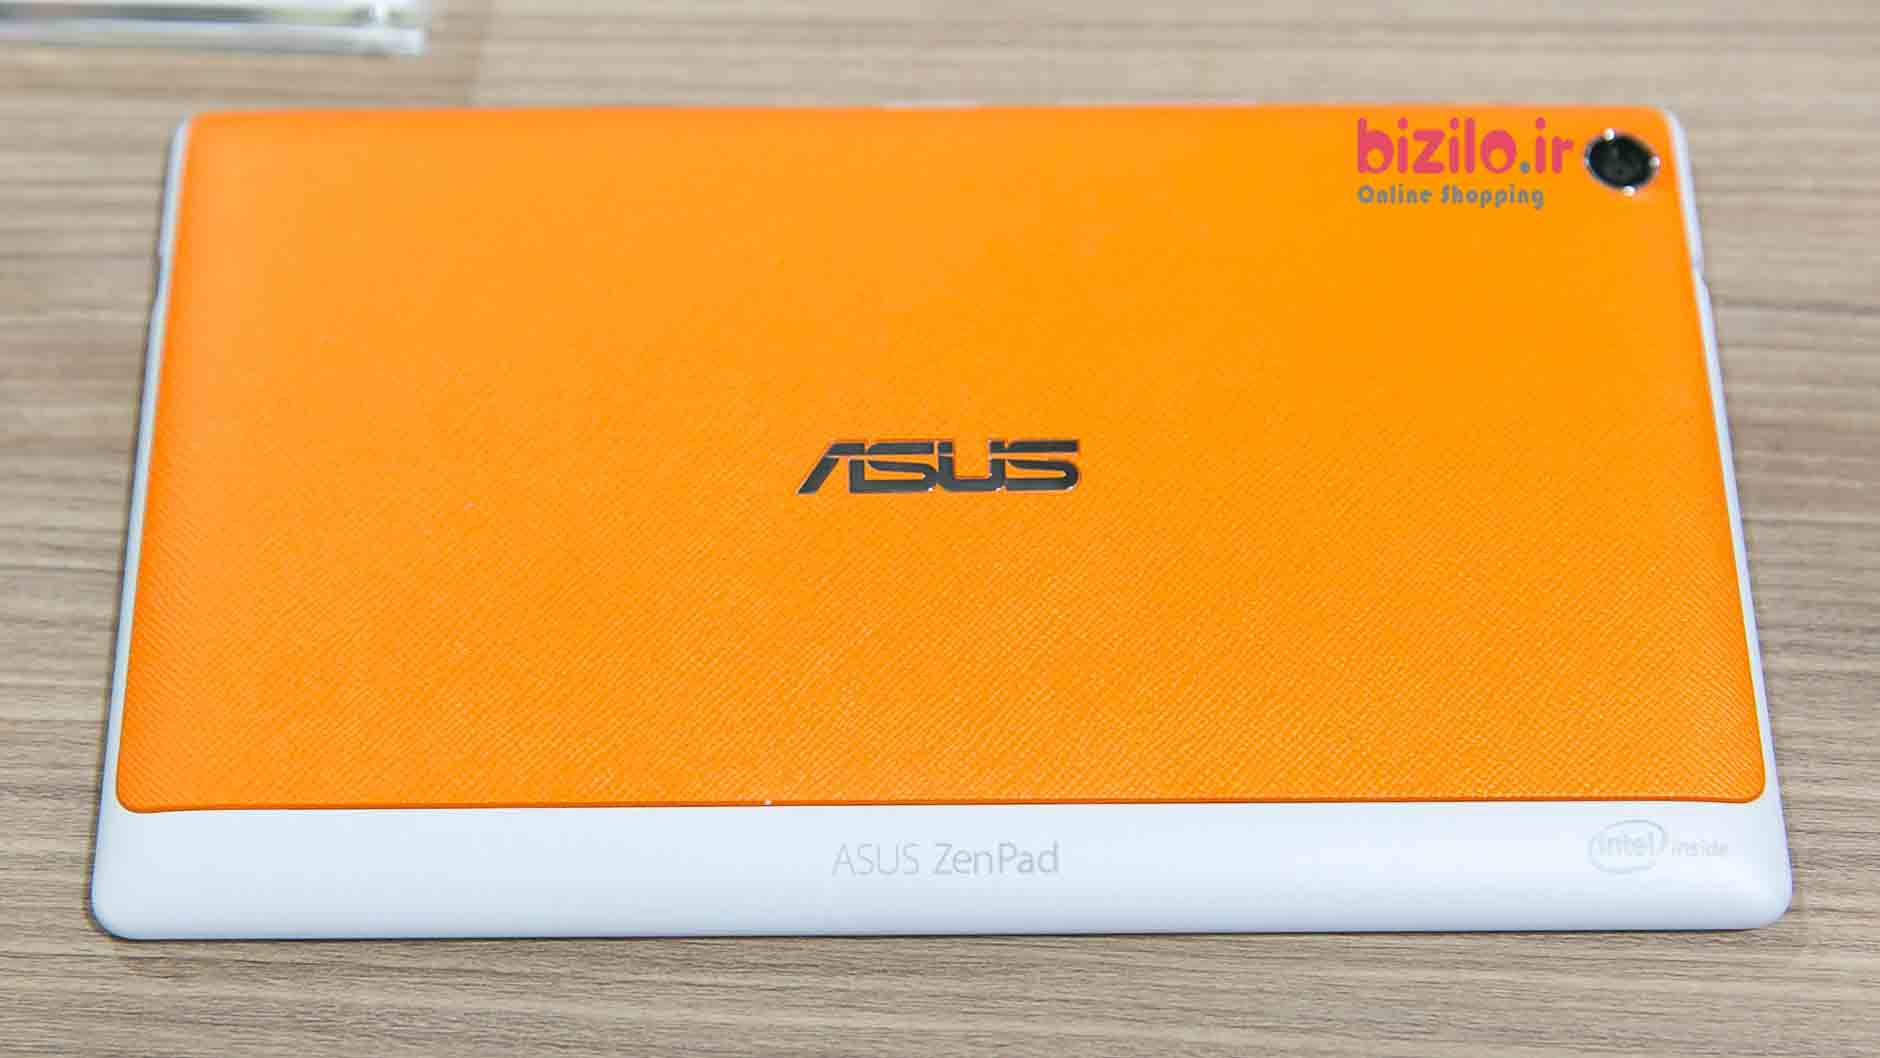 خرید تبلت ASUS ZenPad 7.0از فروشگاه اینترنتی بیزیلو